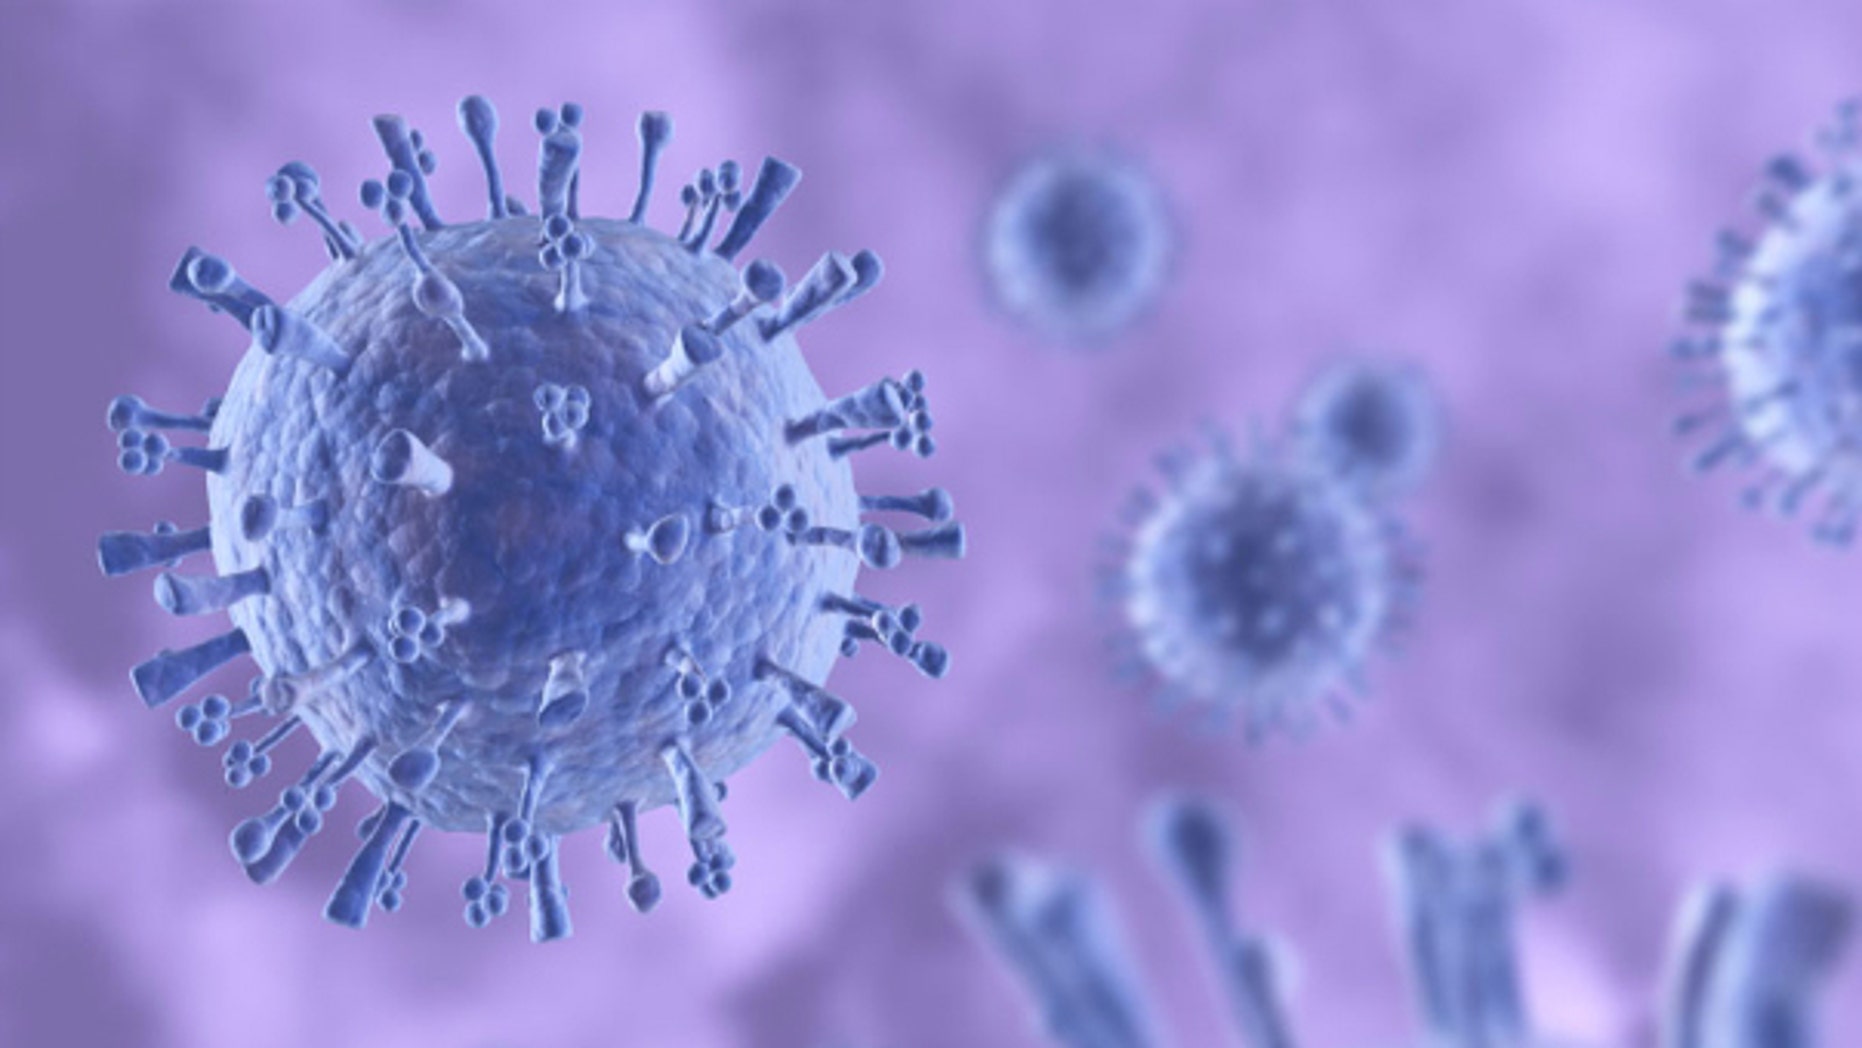 H1N1 swine flu kills 18 in Armenia, three in officials Fox News